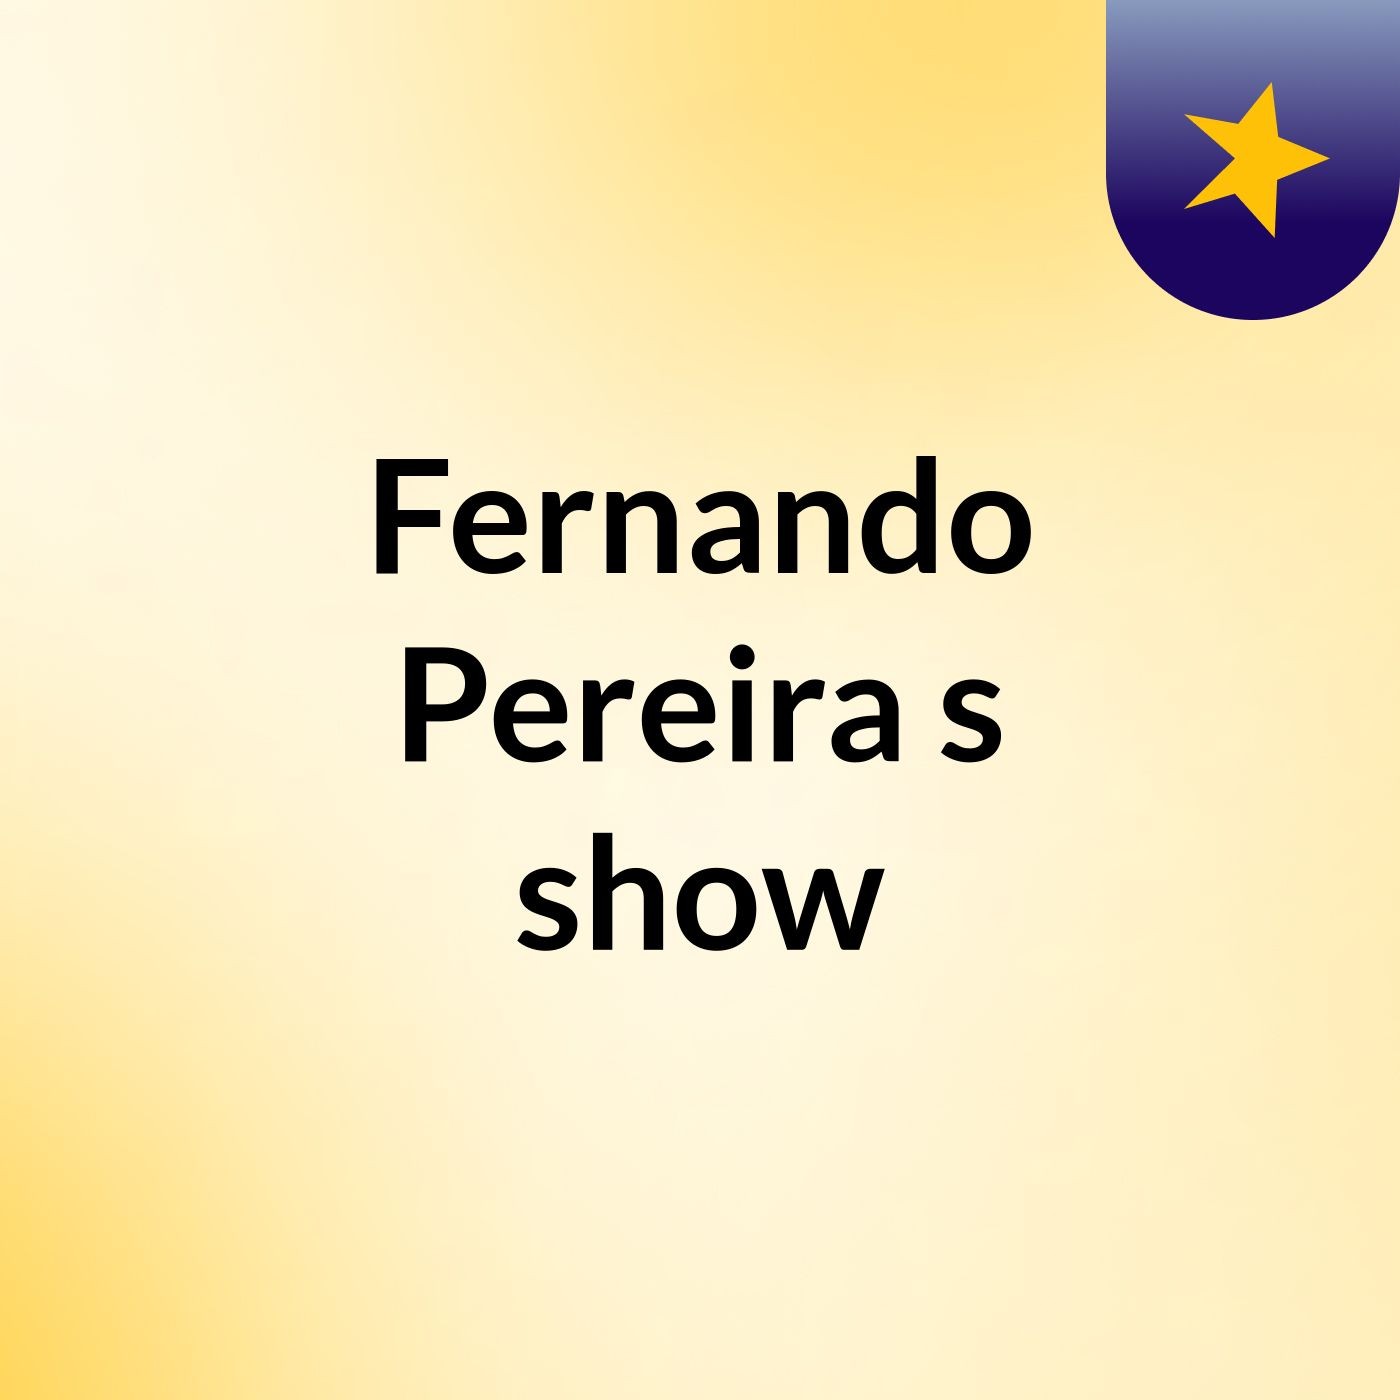 Fernando Pereira's show